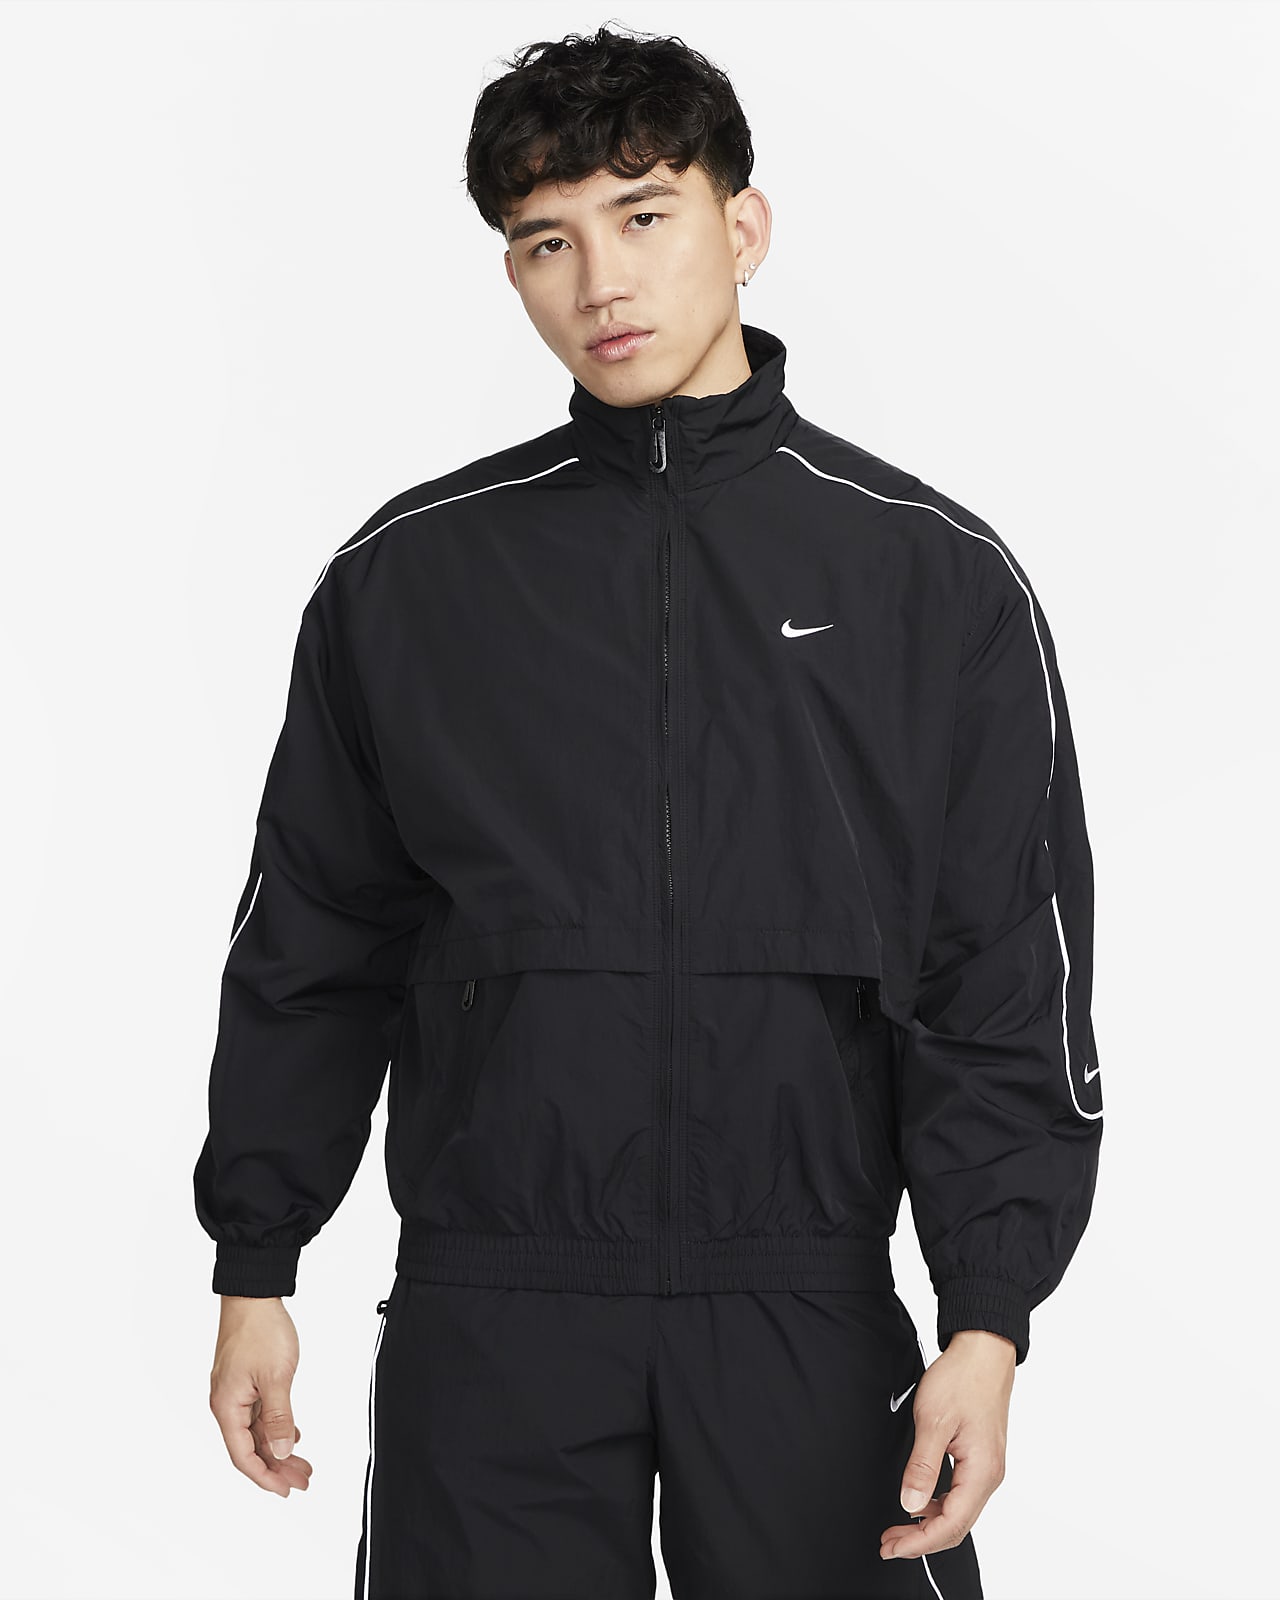 Spectacle tit håndtering Nike Sportswear Solo Swoosh Men's Woven Tracksuit Jacket. Nike ID